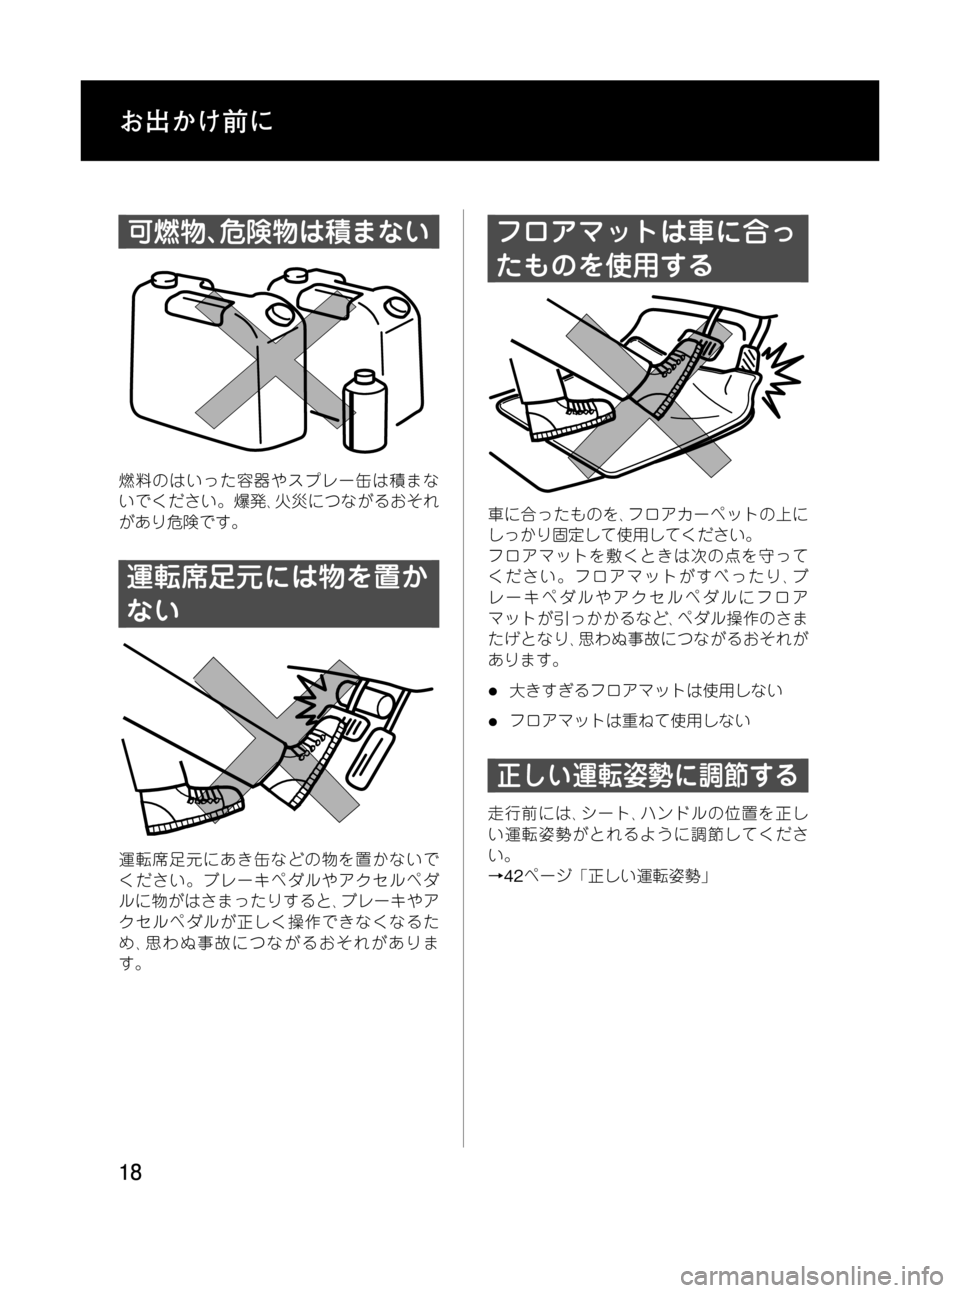 MAZDA MODEL RX 8 2008  取扱説明書 (in Japanese) Black plate (18,1)
可燃物､危険物は積まない
燃料のはいった容器やスプレー缶は積まな
いでください。爆発､火災につながるおそれ
があり危険です。
